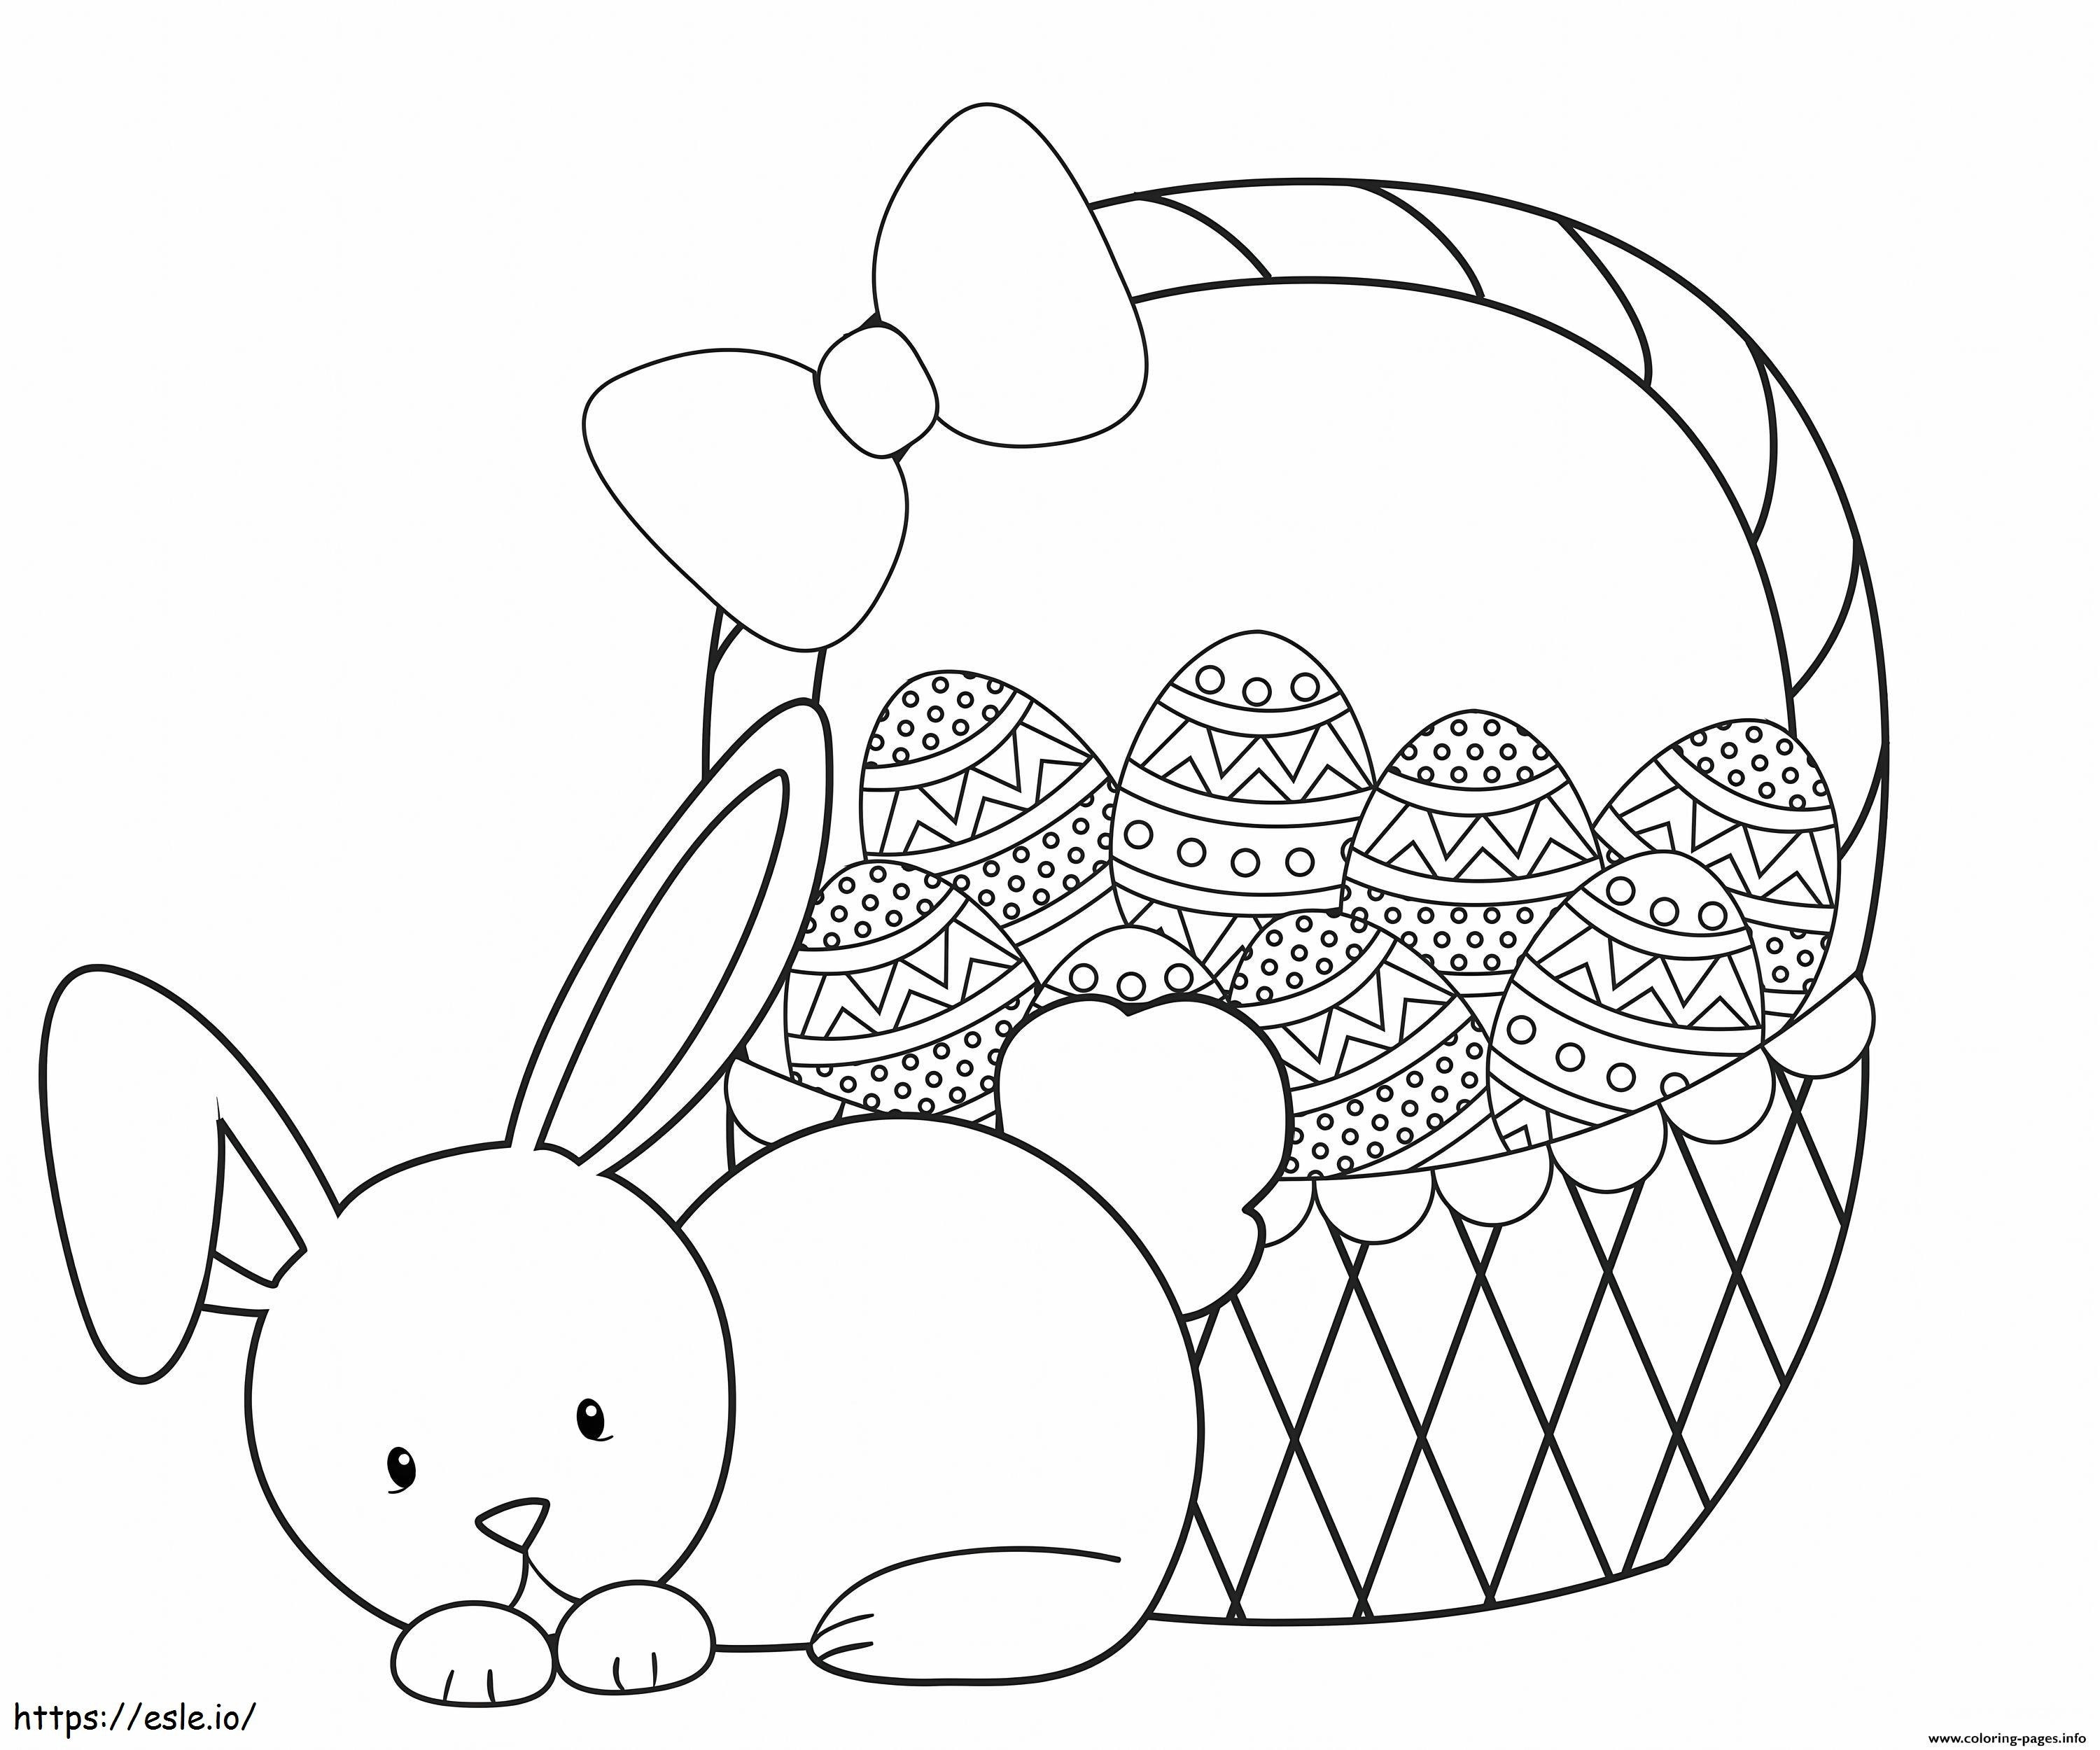 Coloriage Lapin mignon avec panier d'oeufs de Pâques à imprimer dessin